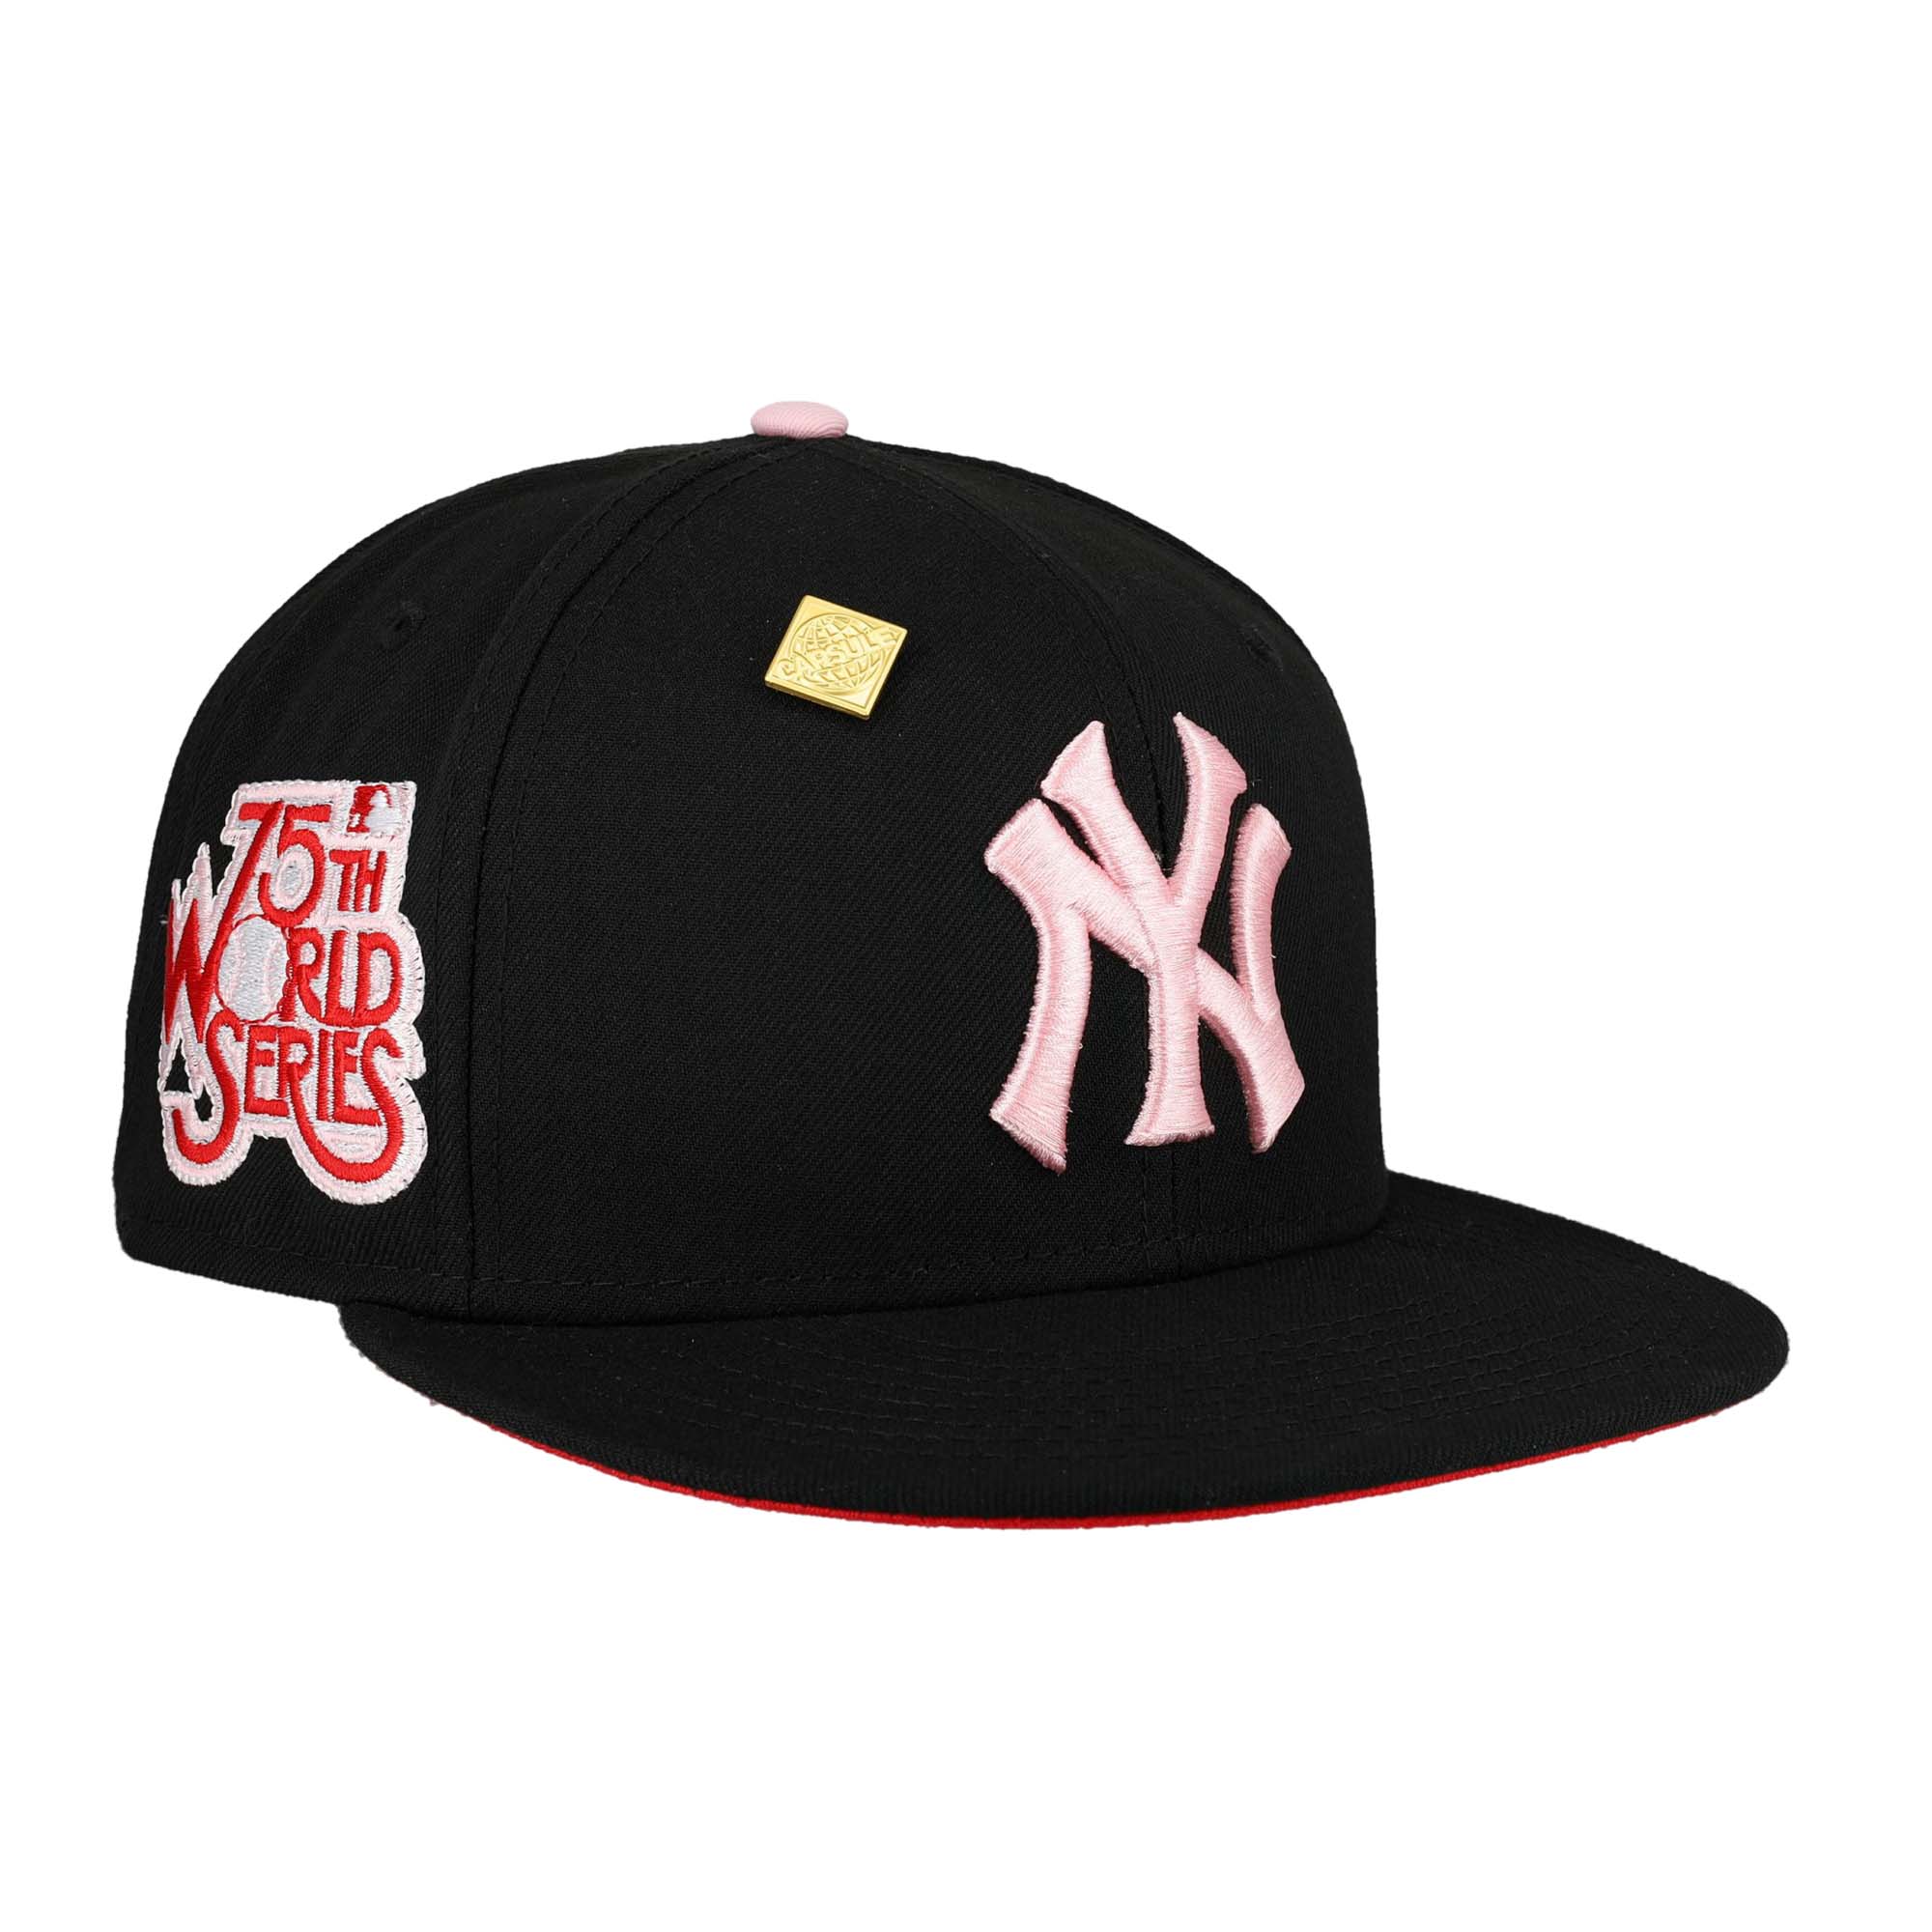 New Era New York Yankees Capsule Valentines Day 75th World